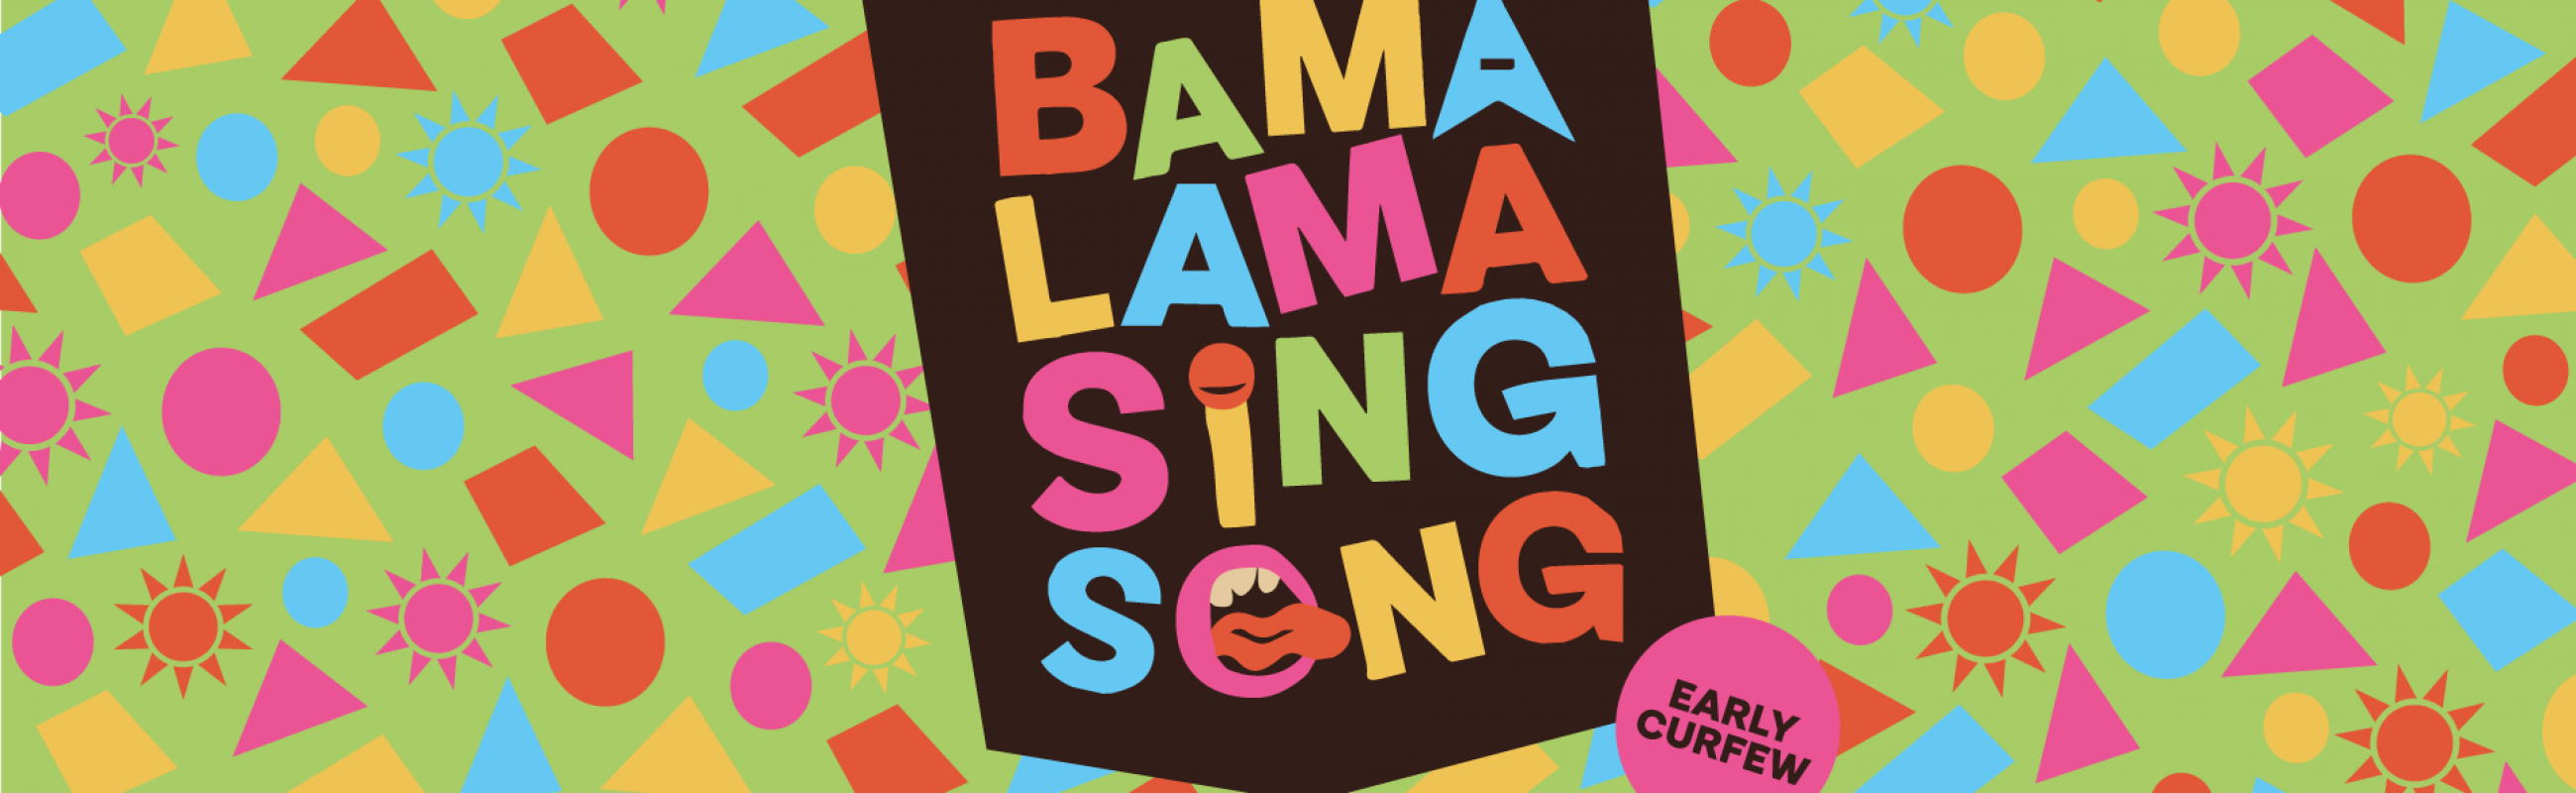 Bama Lama Sing Song Banner